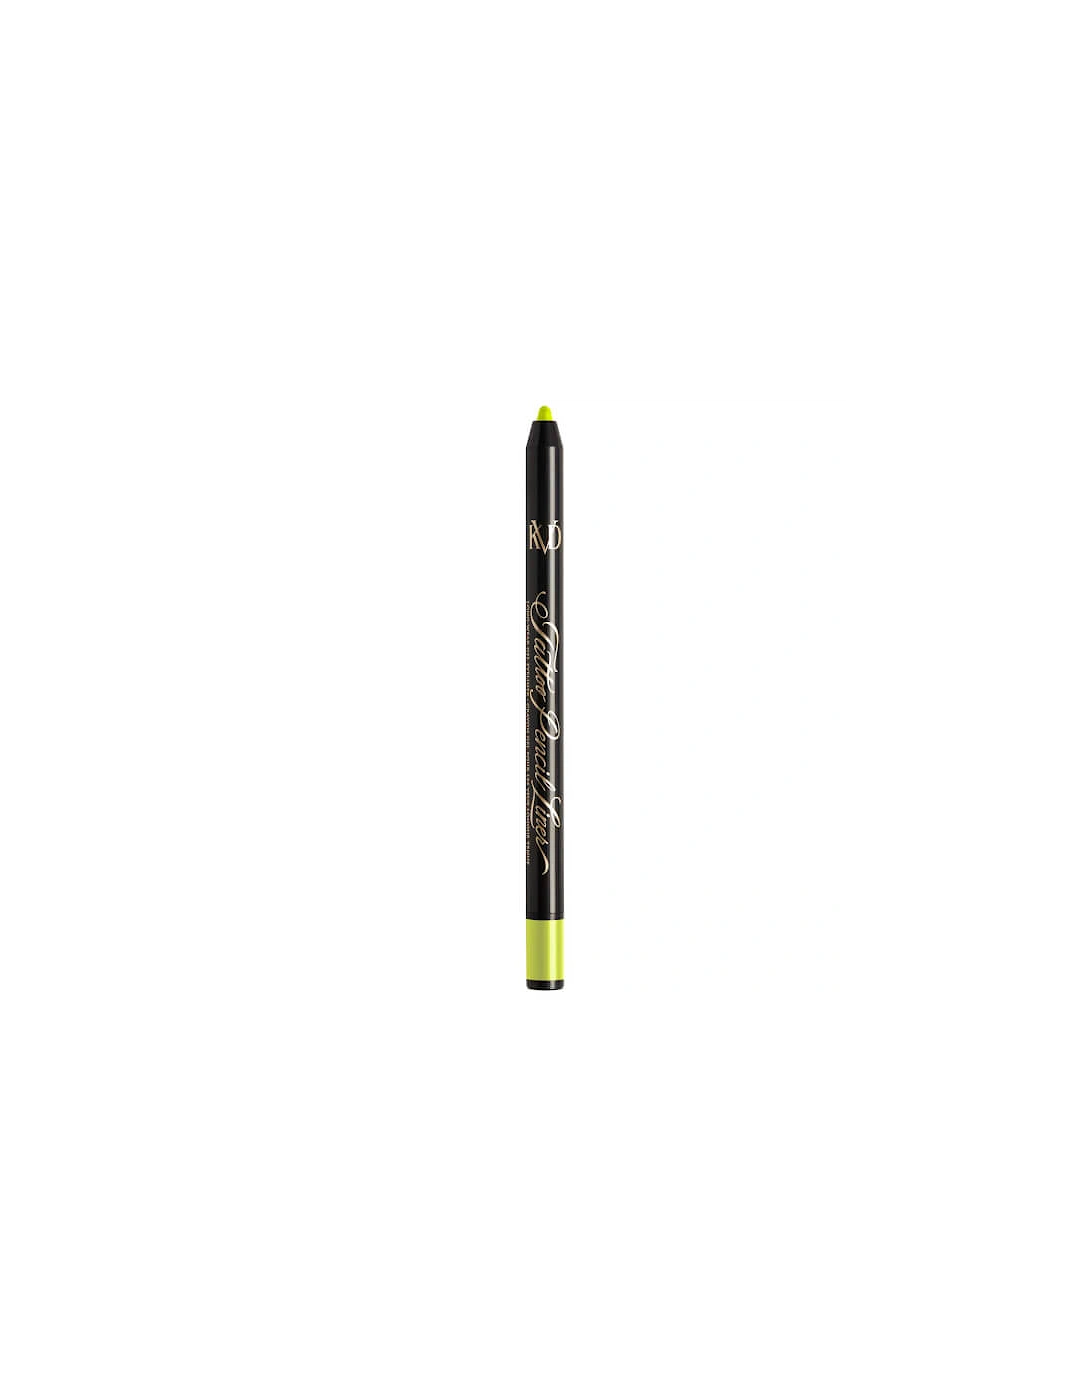 Tattoo Pencil Liner Long-Wear Gel Eyeliner - Radium Green 130, 2 of 1